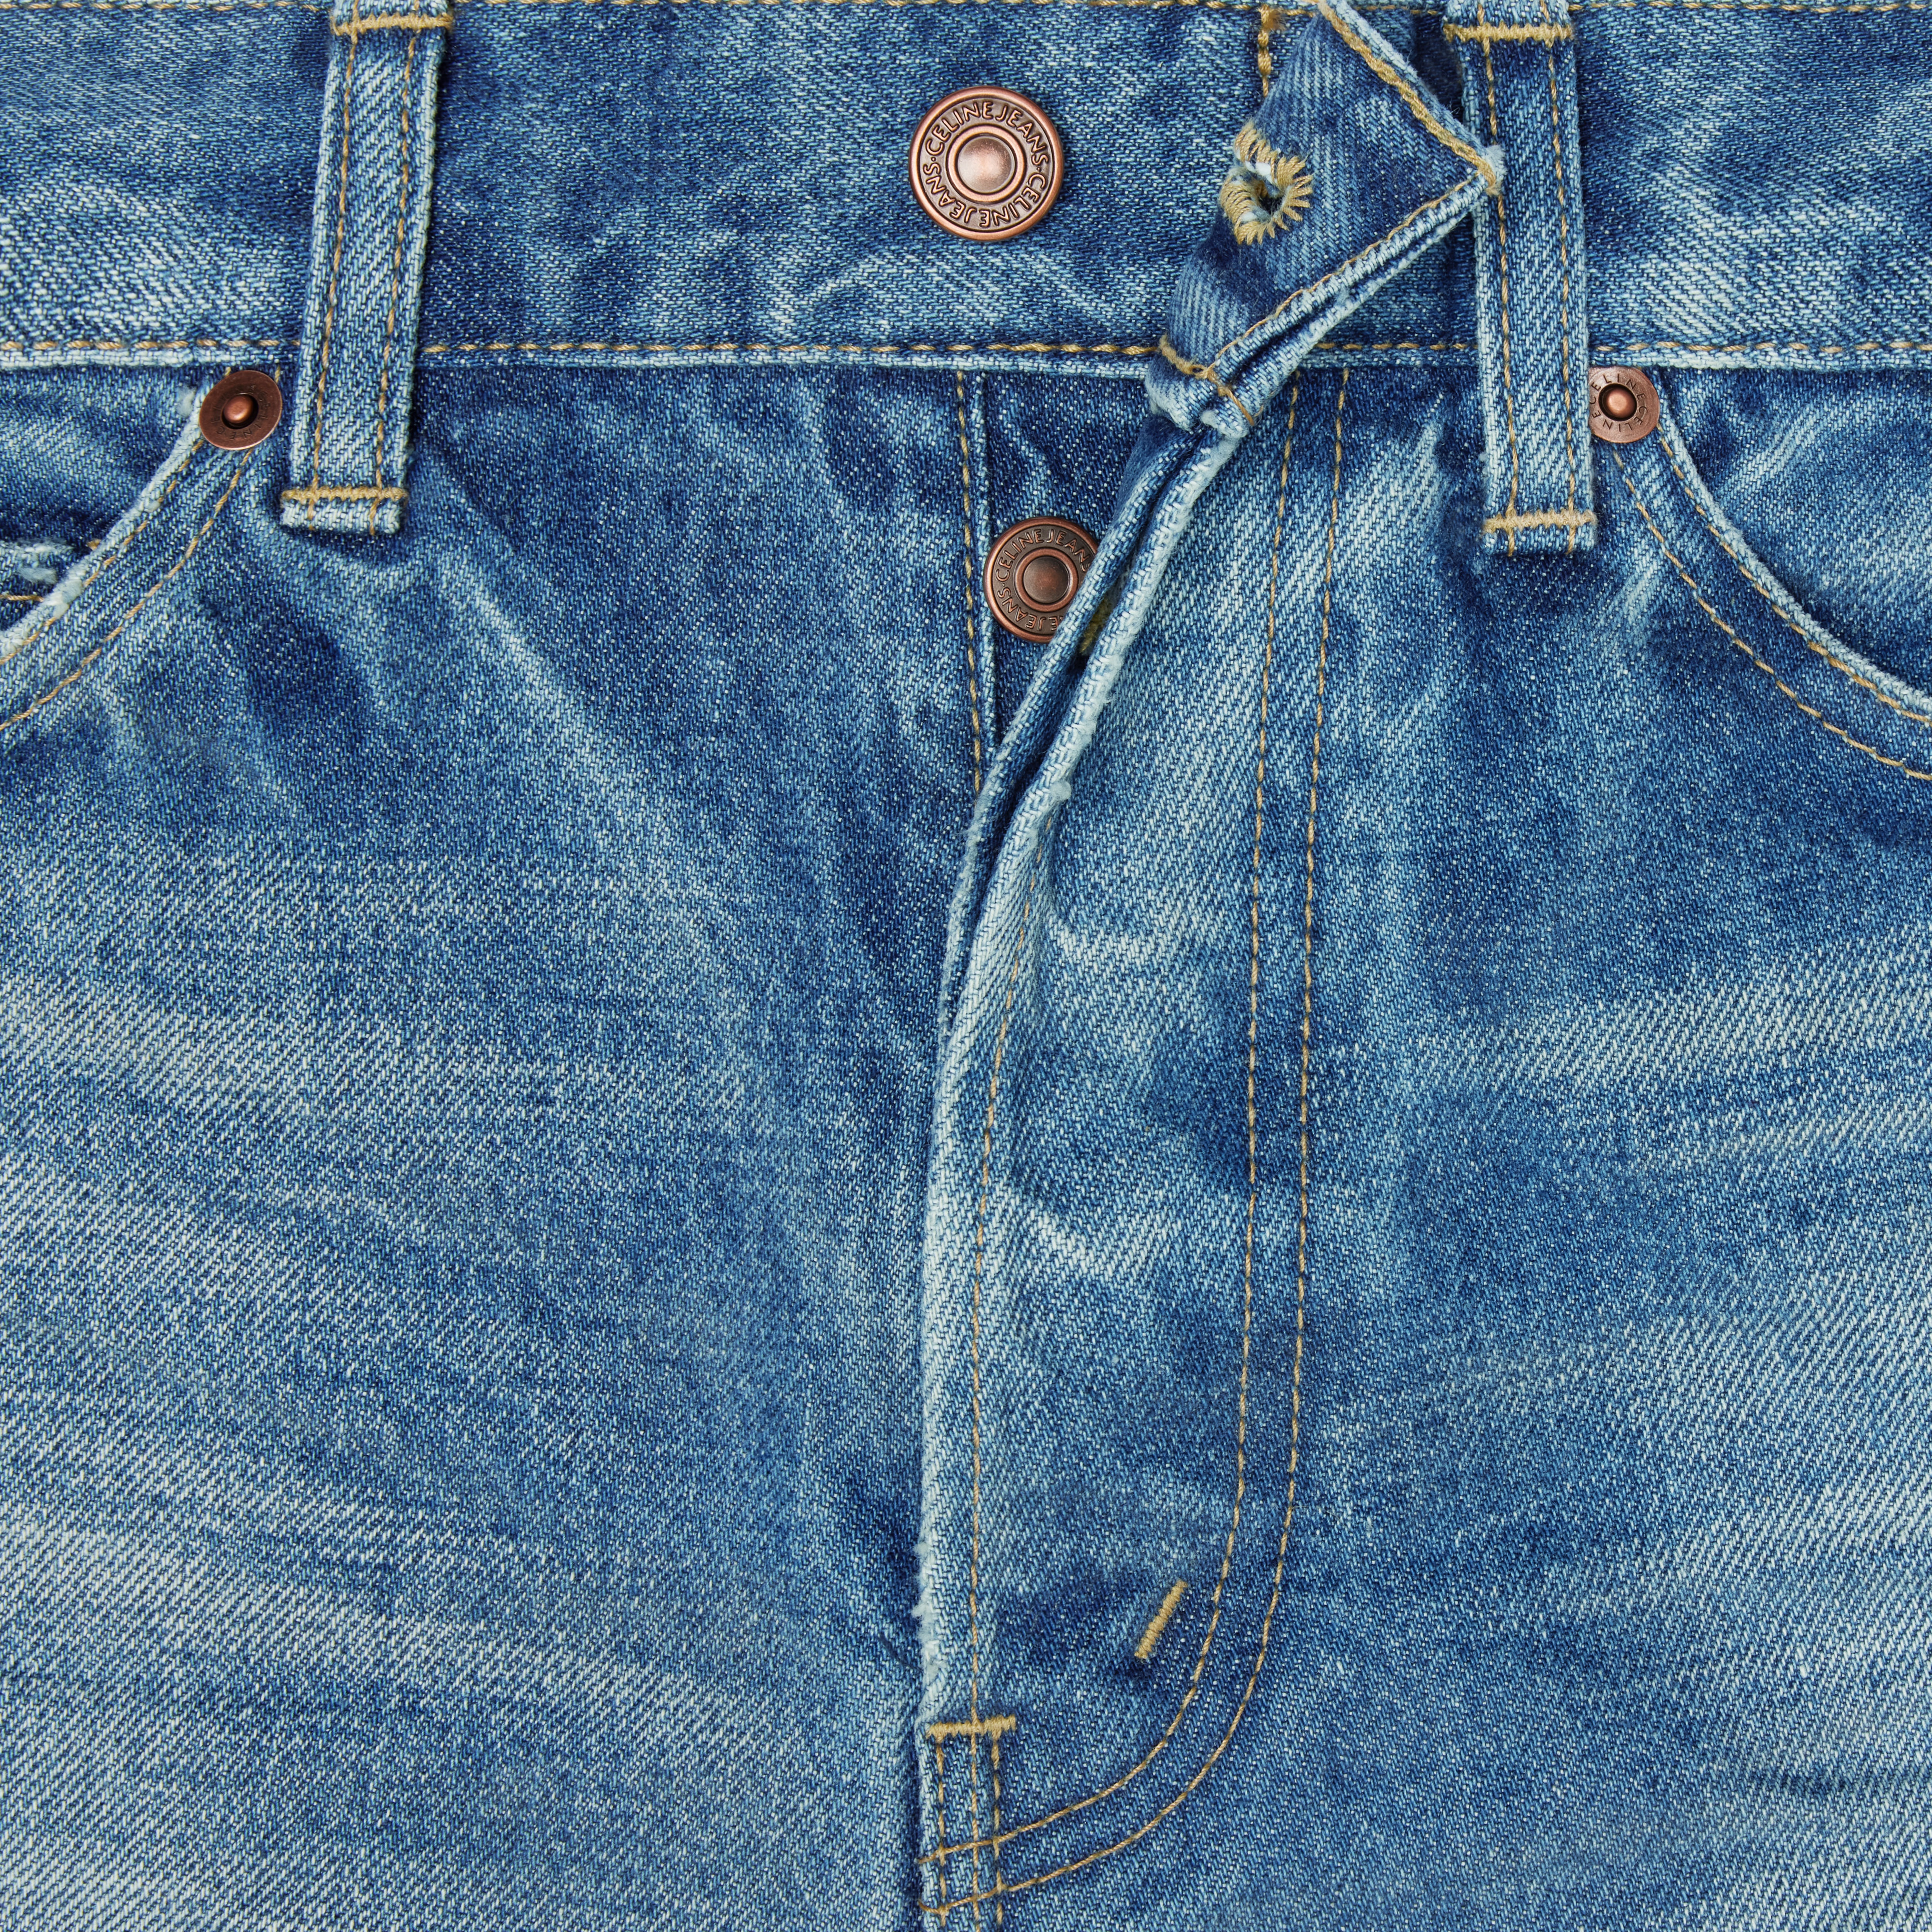 Lou jeans in vintage union wash denim - 4